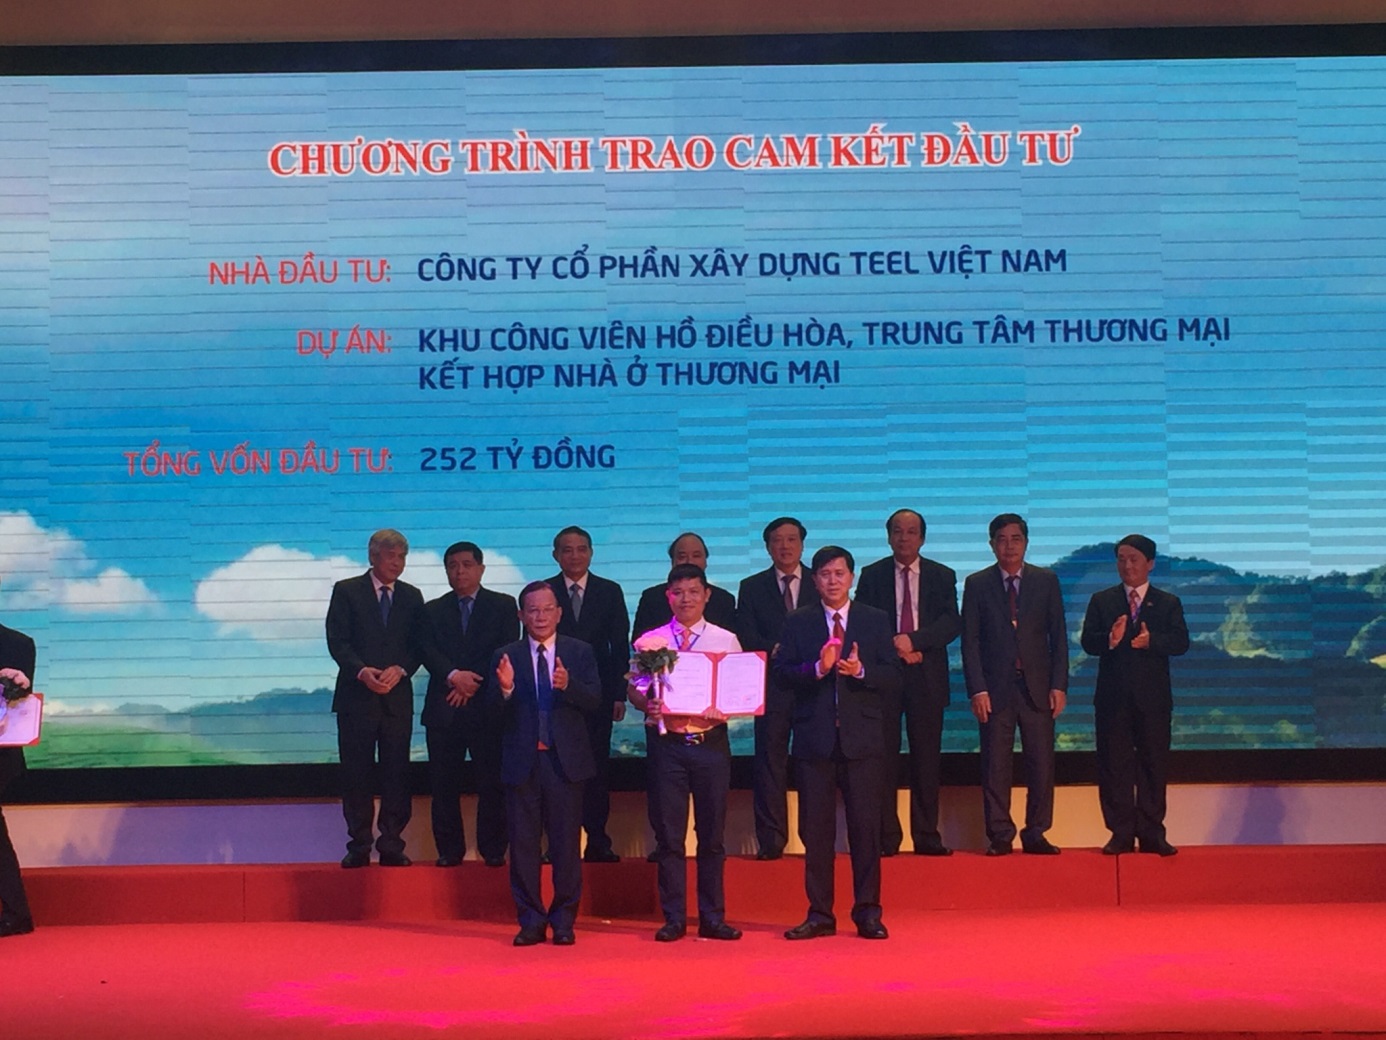 Công ty cổ phần xây dựng TEEL Việt Nam dự Hội nghị xúc tiến đầu tư tỉnh Sơn La ngày 17/7/2017 tại Mộc Châu, Sơn La